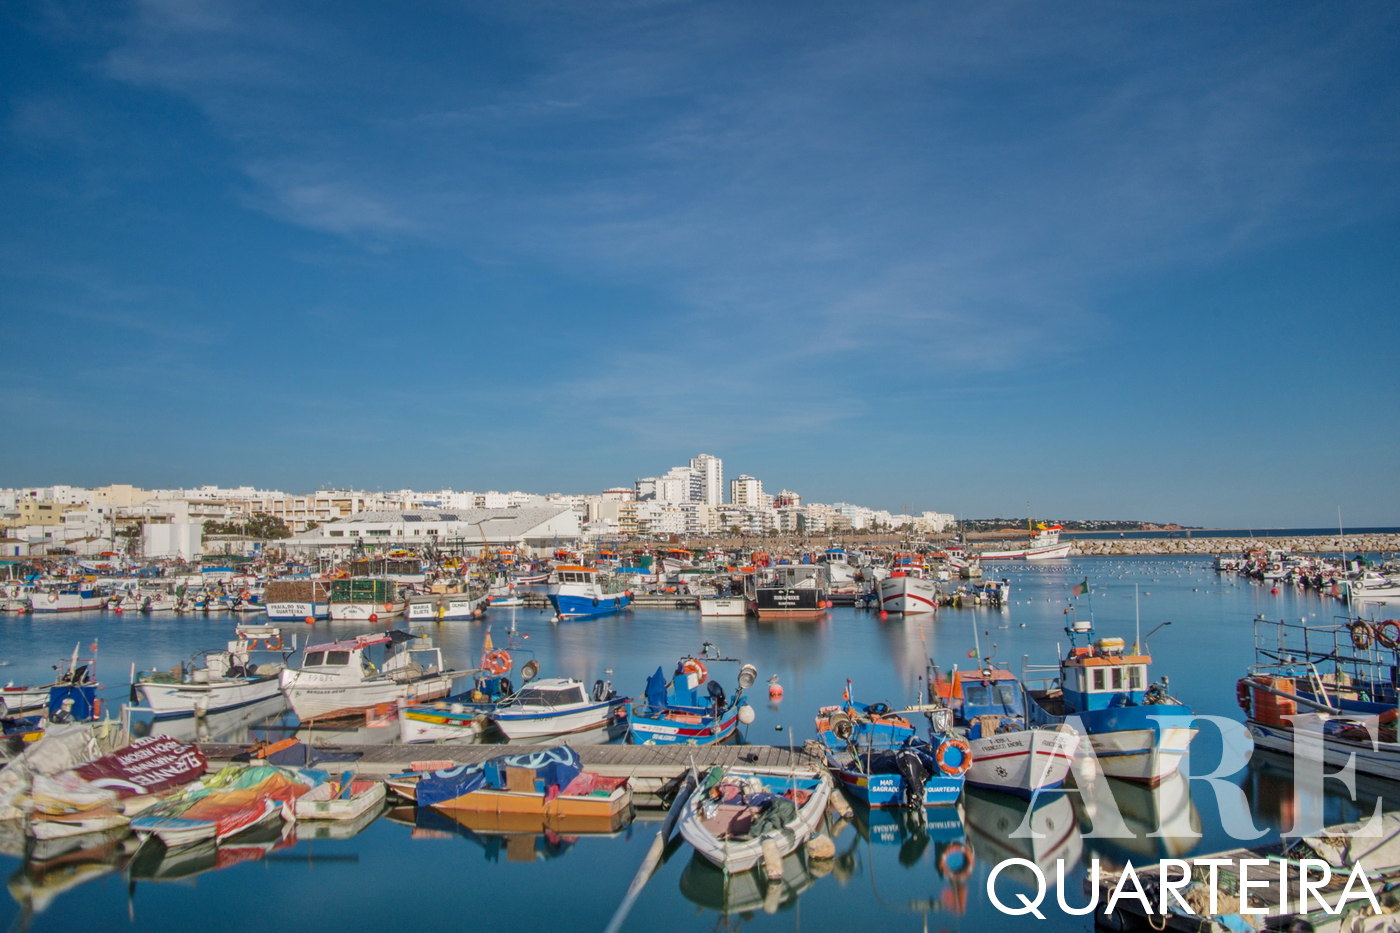 Barcos pesqueros en el puerto de Quarteira, horizonte de la ciudad al fondo